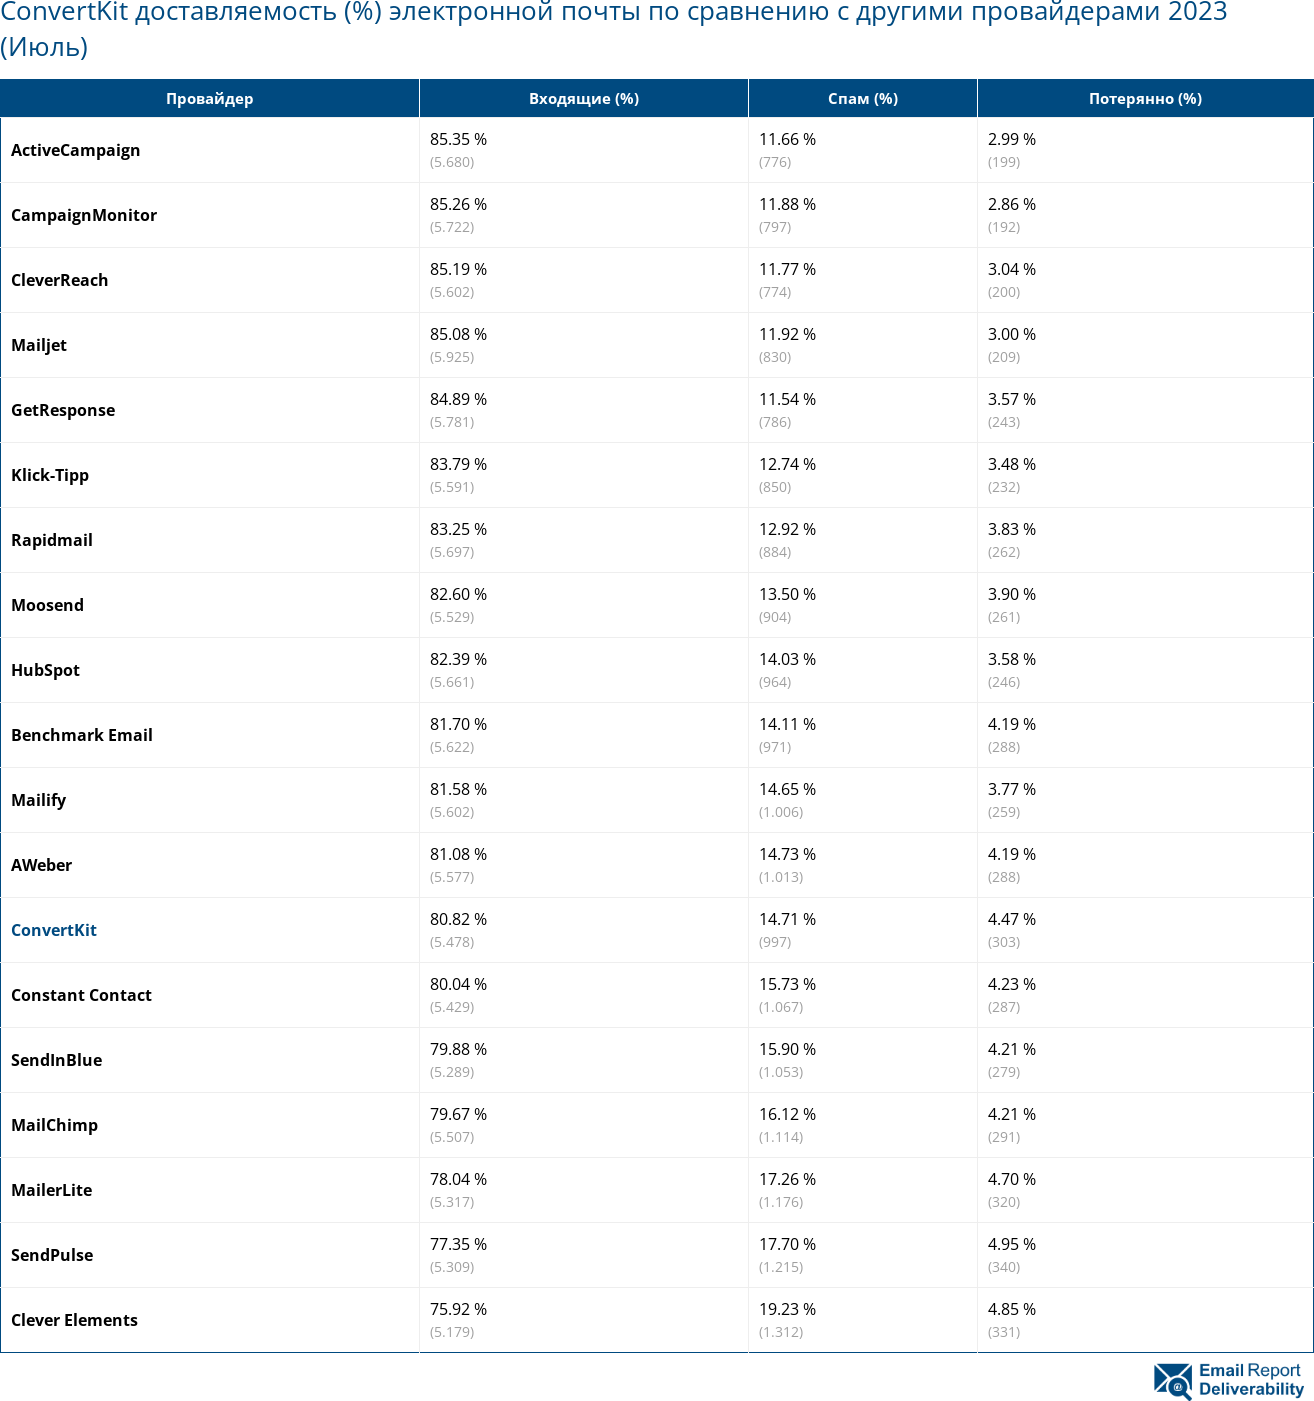 ConvertKit доставляемость (%) электронной почты по сравнению с другими провайдерами 2023 (Июль)